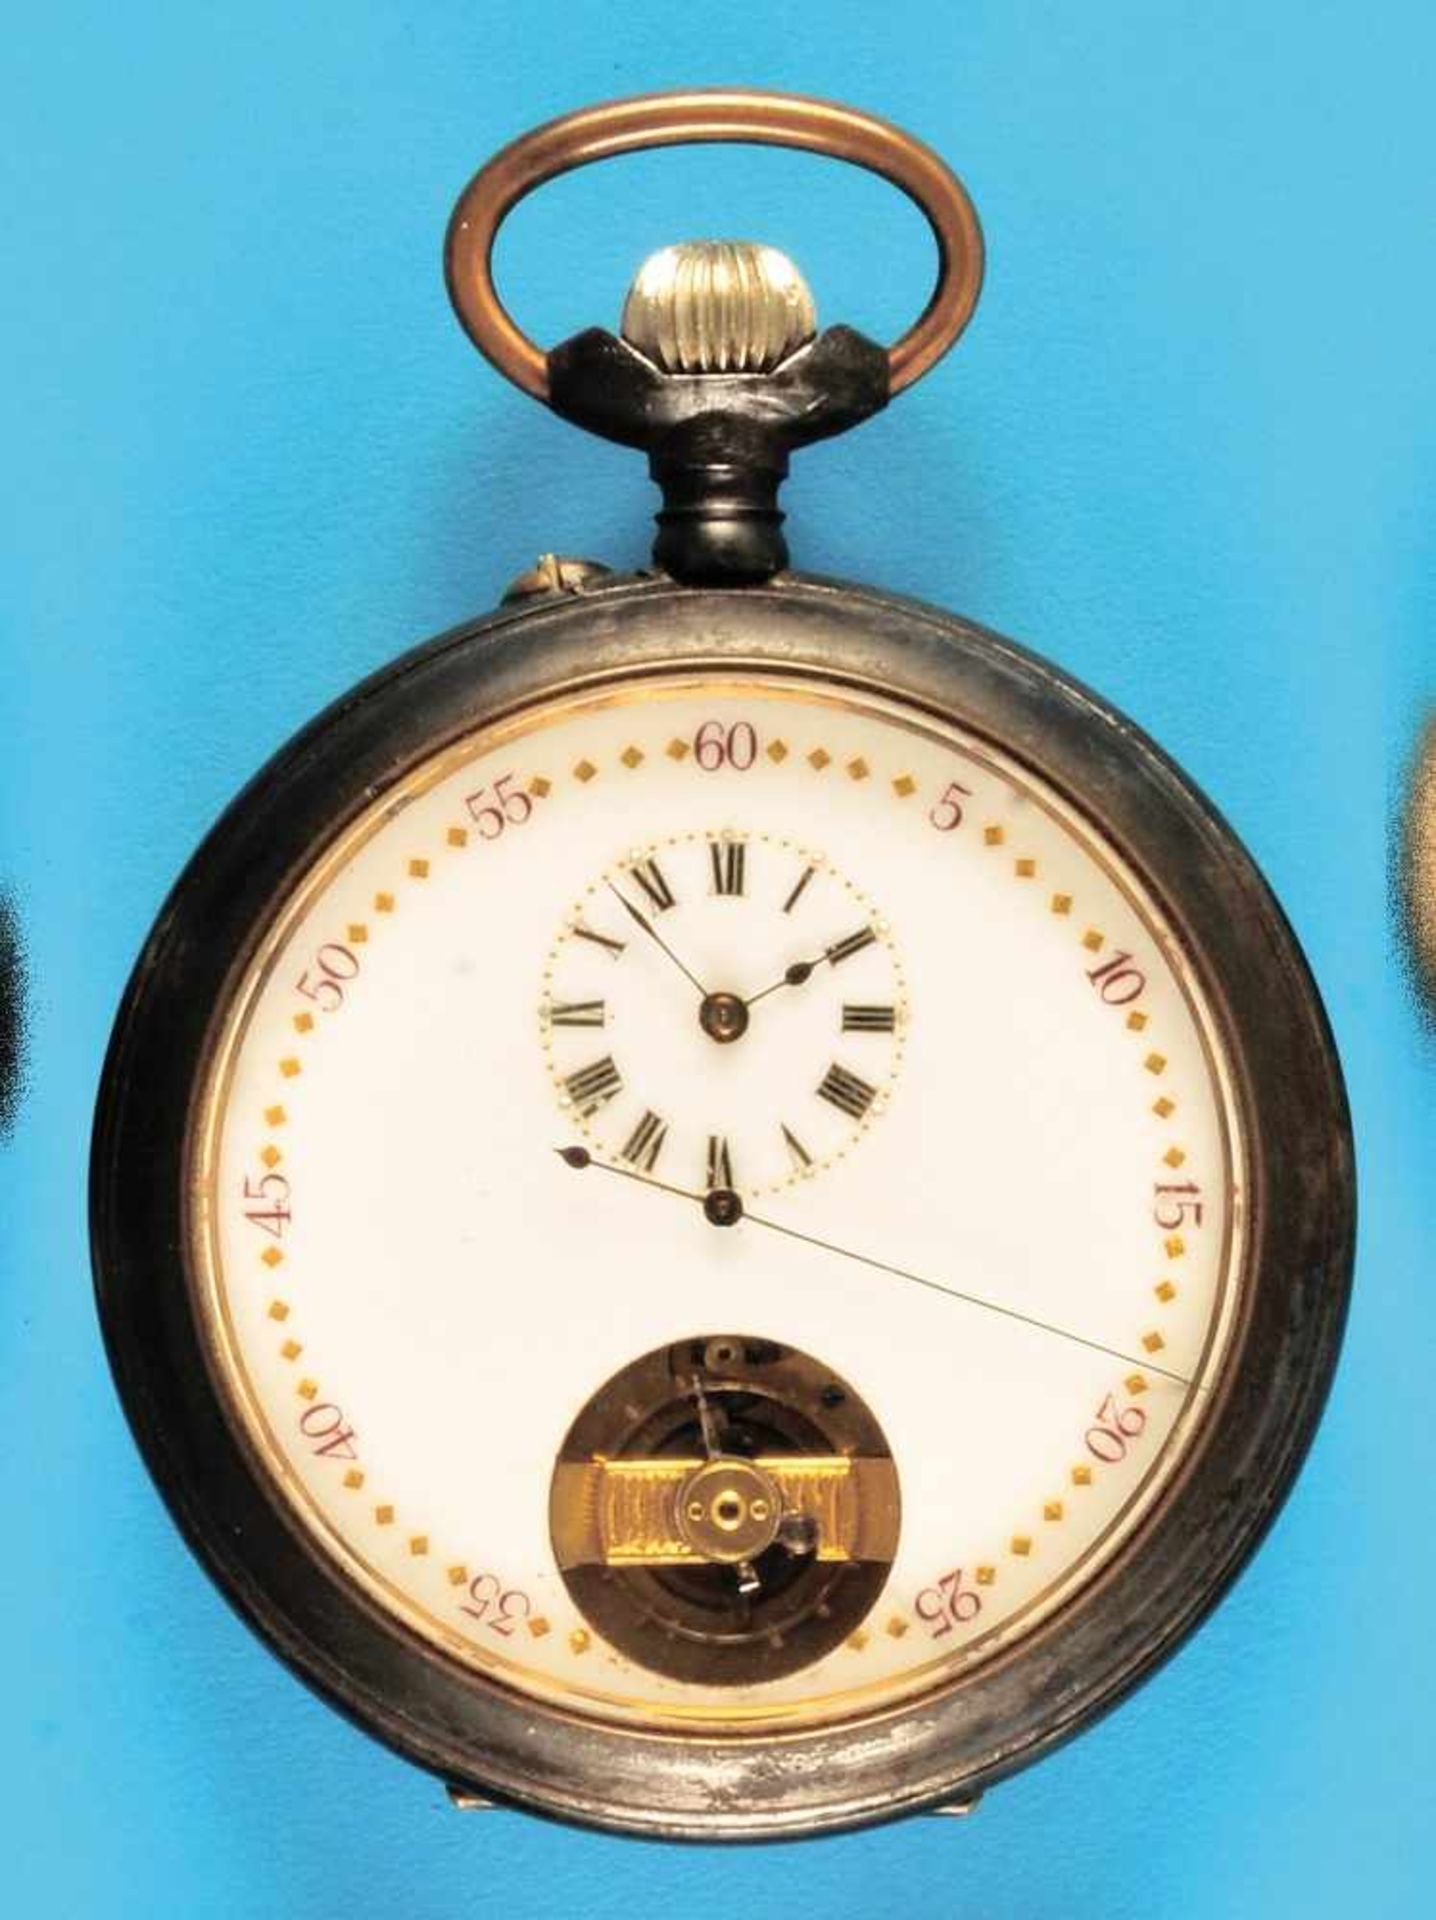 Exceptional big metal pocket watch with 15-days movement and visible balanceAußergewöhnlich große